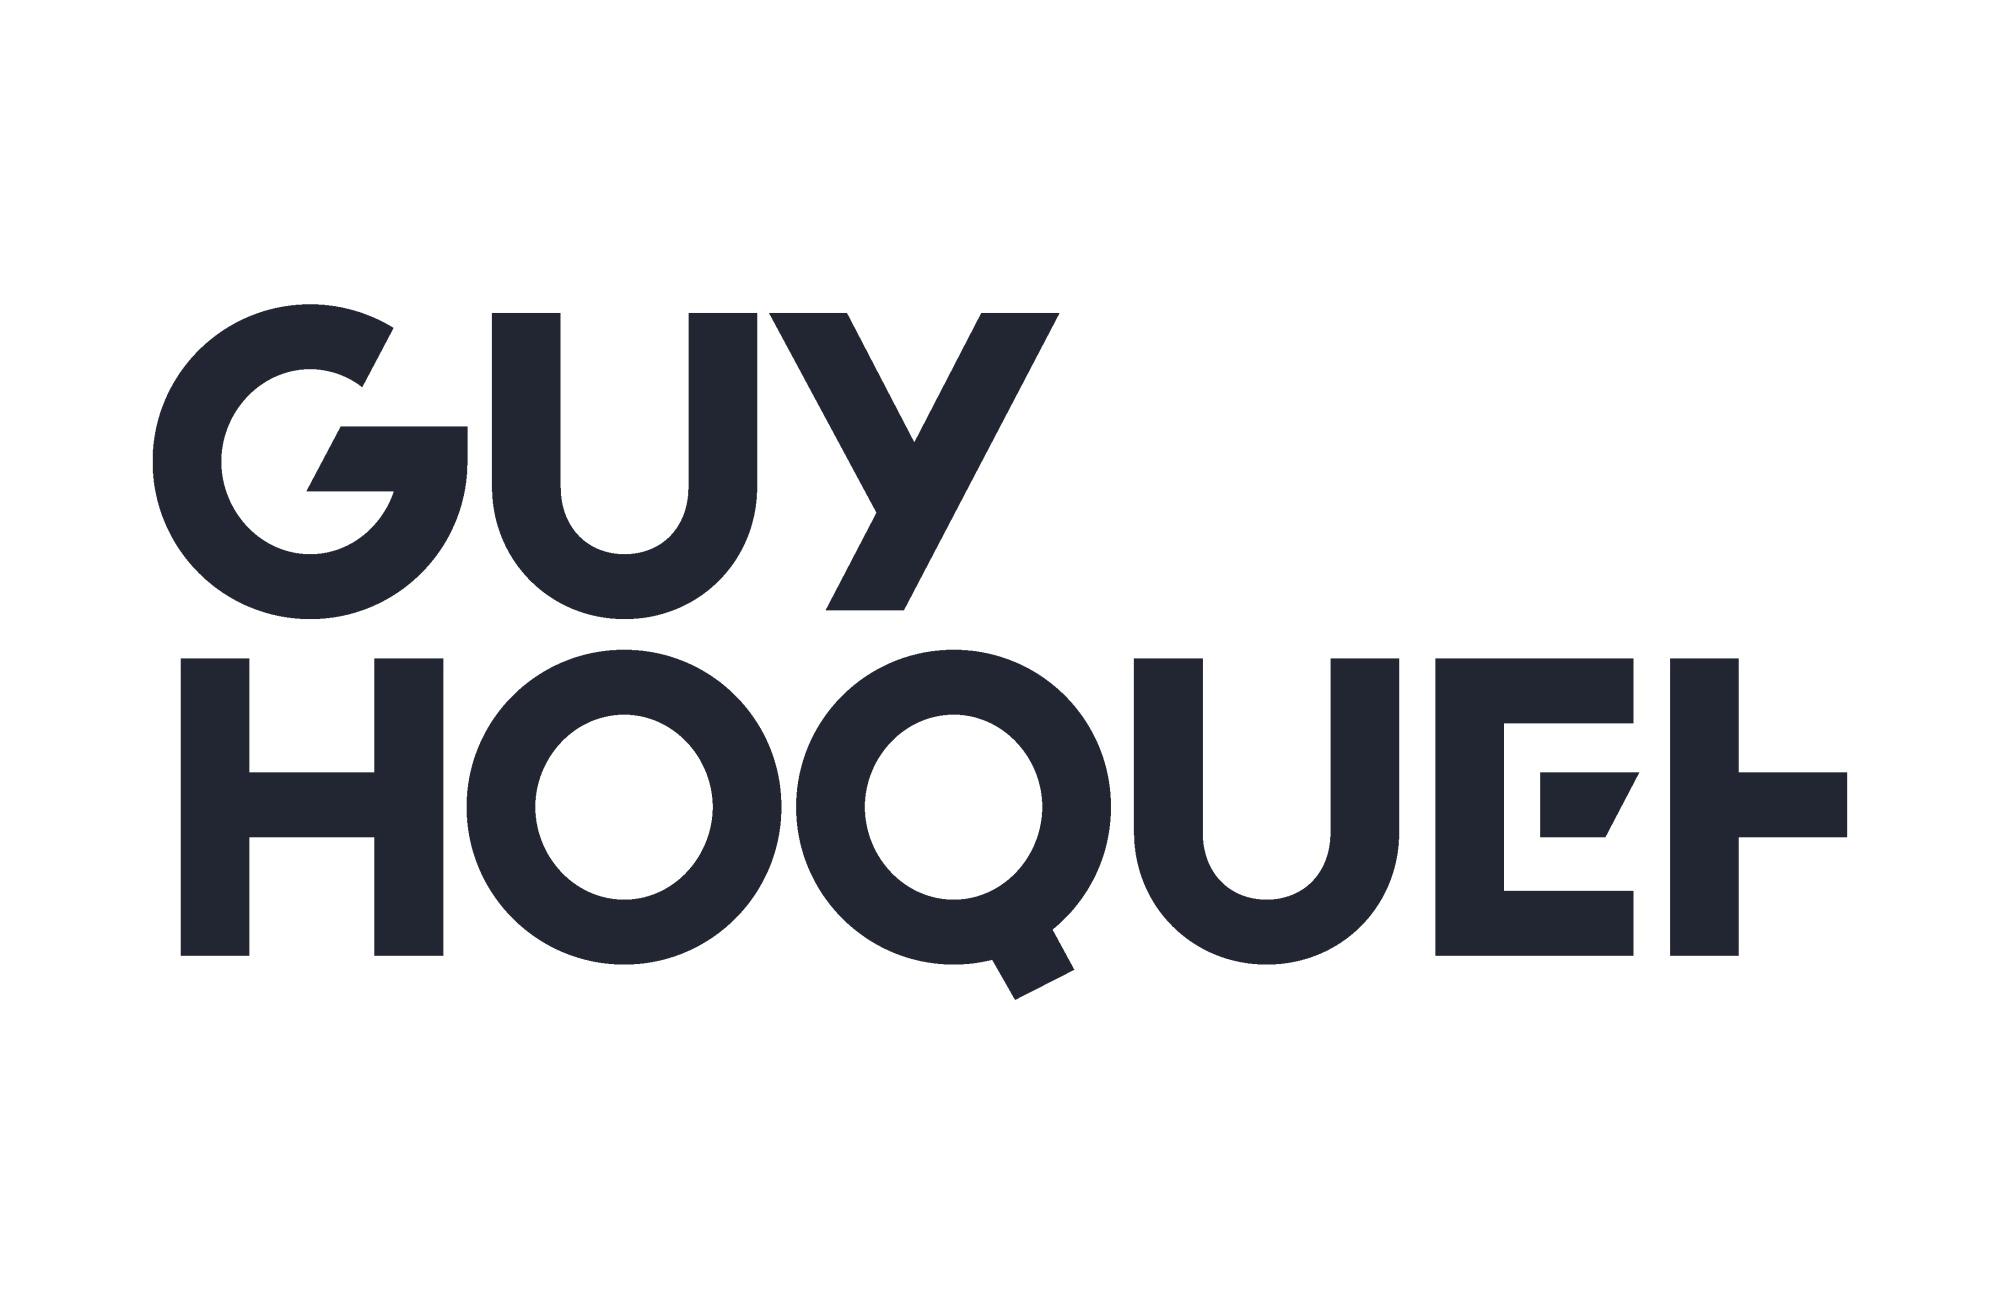 Guy Hoquet Montpellier